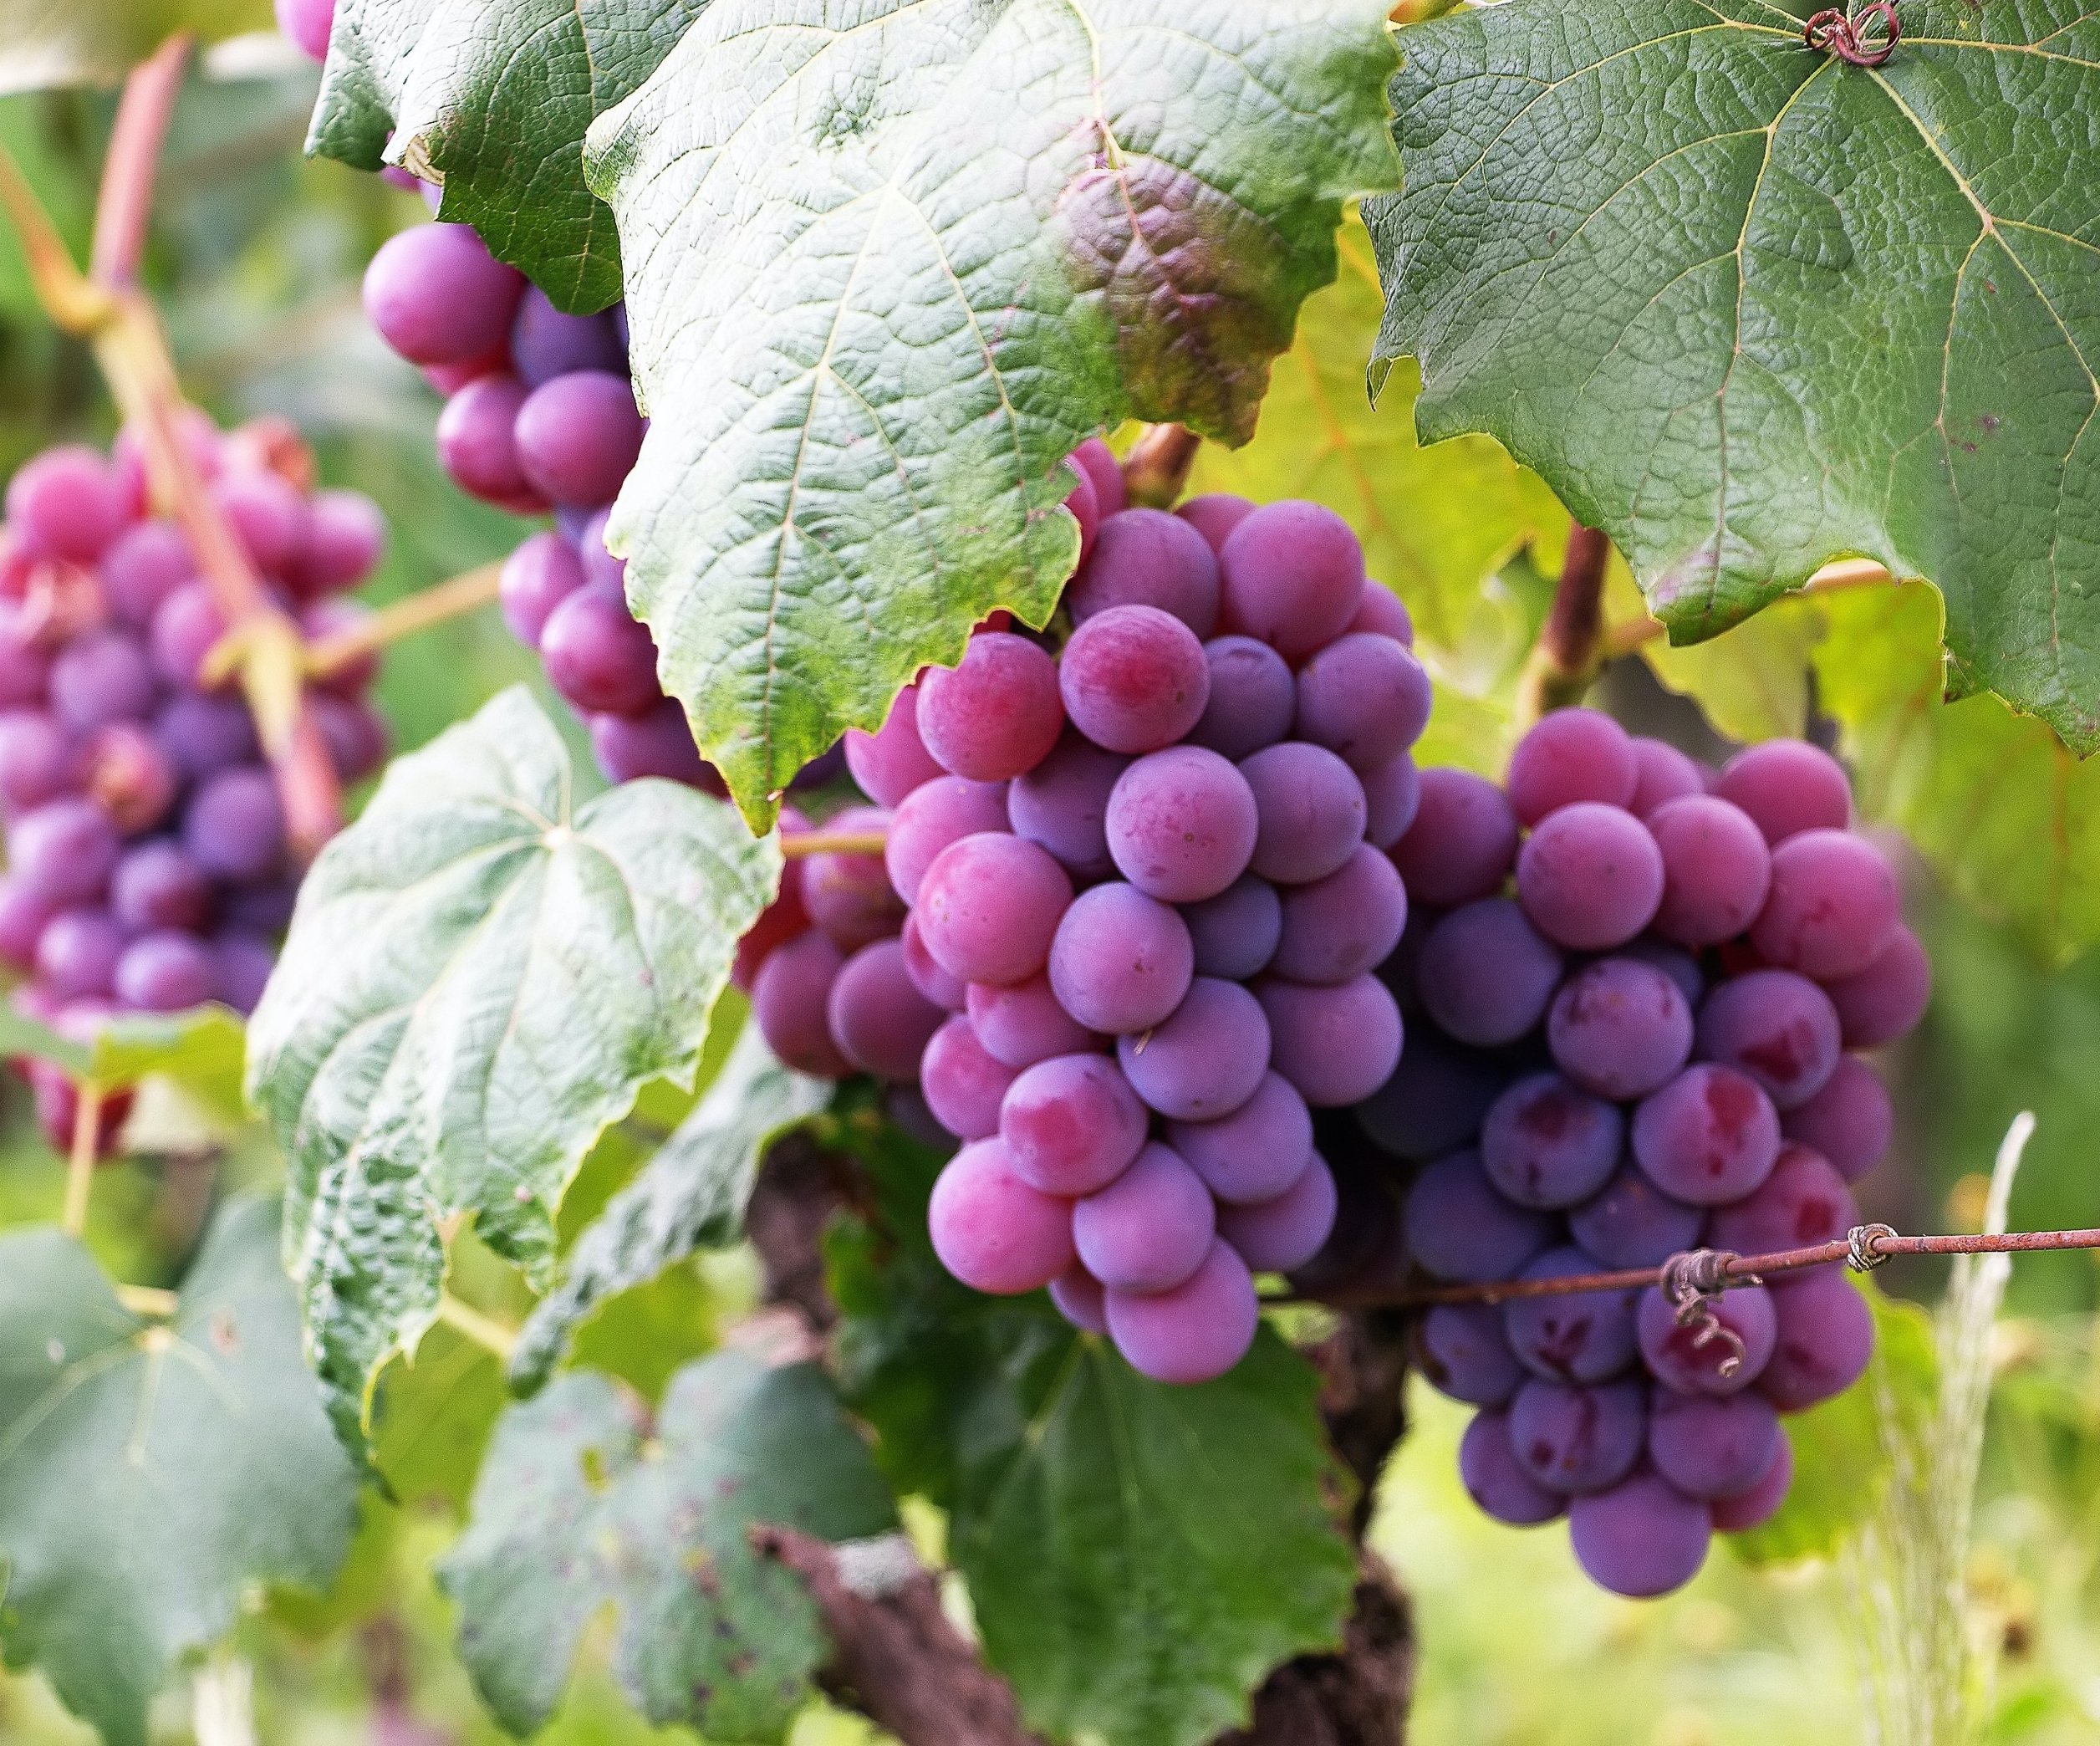 Как защитить виноград от птиц? Эффективная защита от воробьев и скворцов - советы и рекомендации